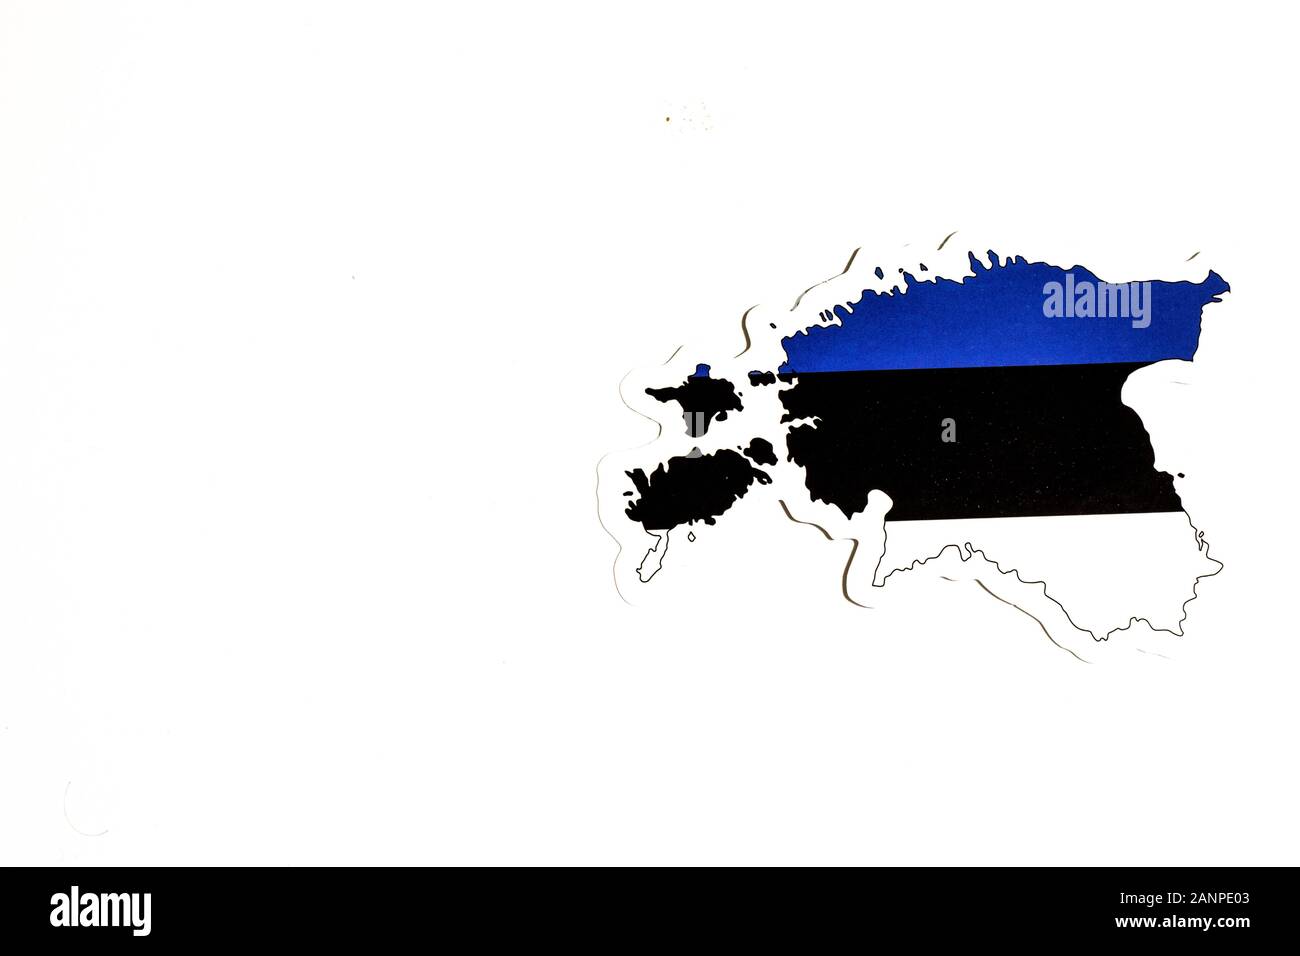 Los Angeles, Kalifornien, USA - 17. Januar 2020: Nationalflaggen Estlands. Länderumriss auf weißem Hintergrund mit Kopierbereich. Politische Illustration Stockfoto